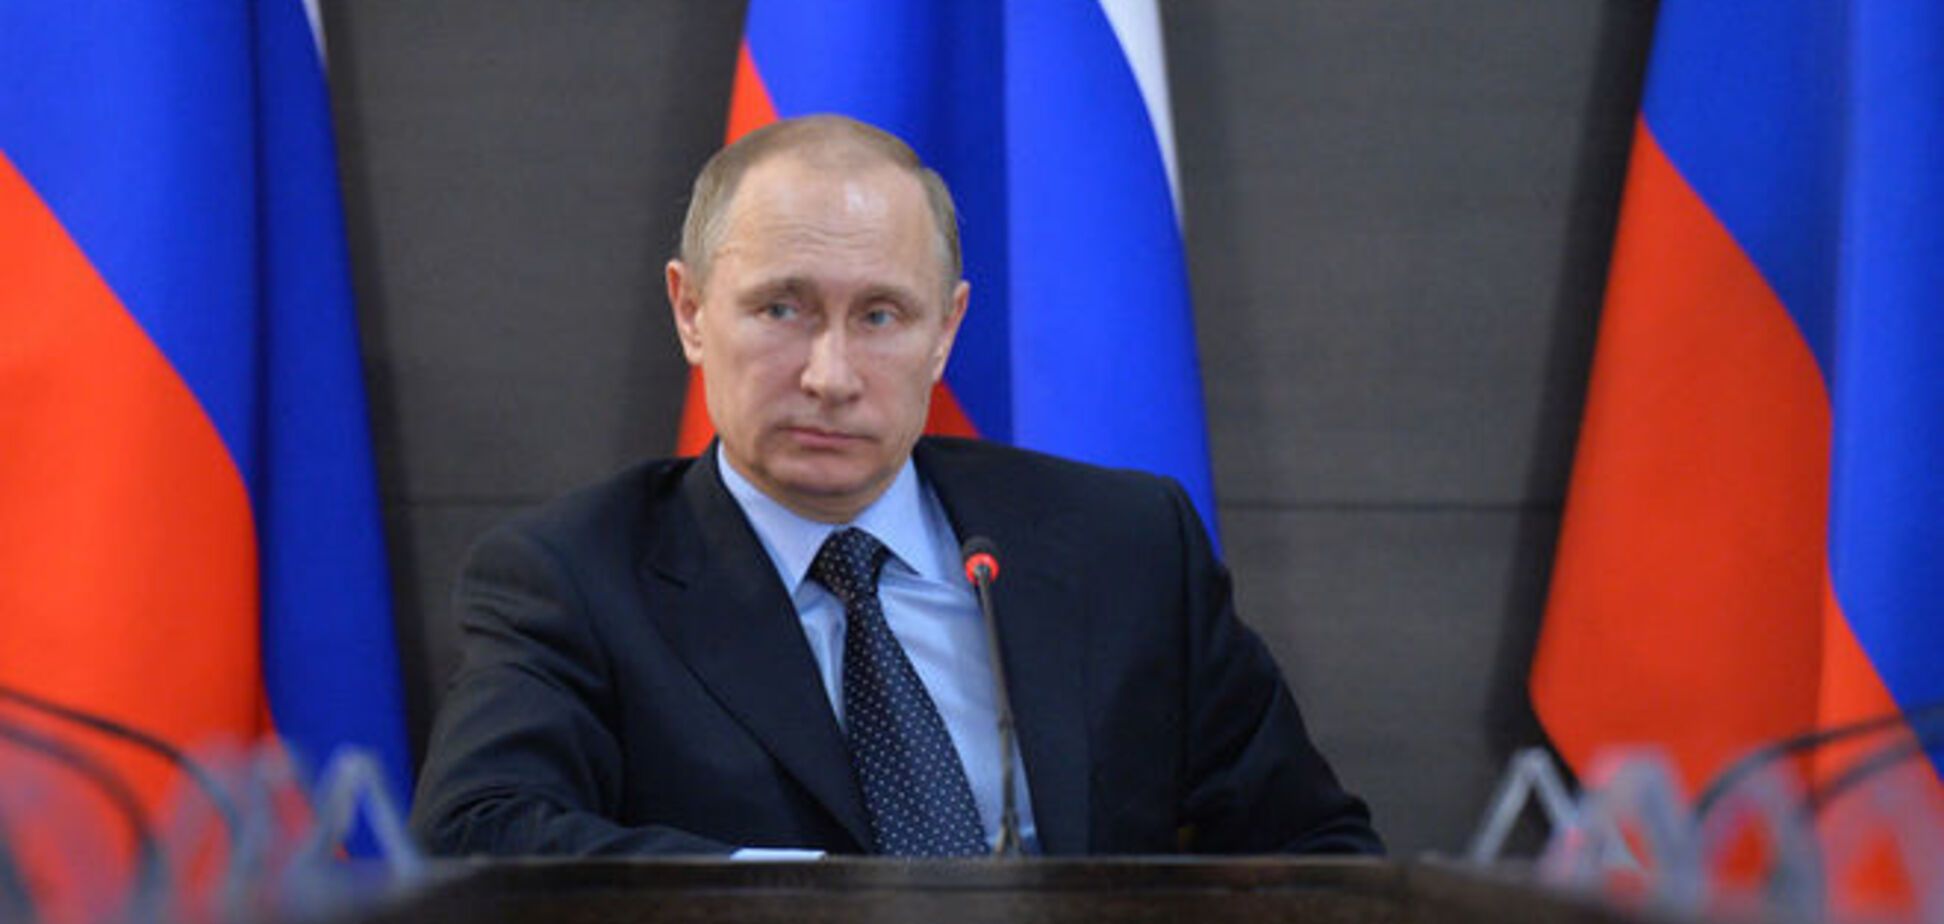 Санкции Запада заставили Путина забыть о 'Новороссии' - российский экономист